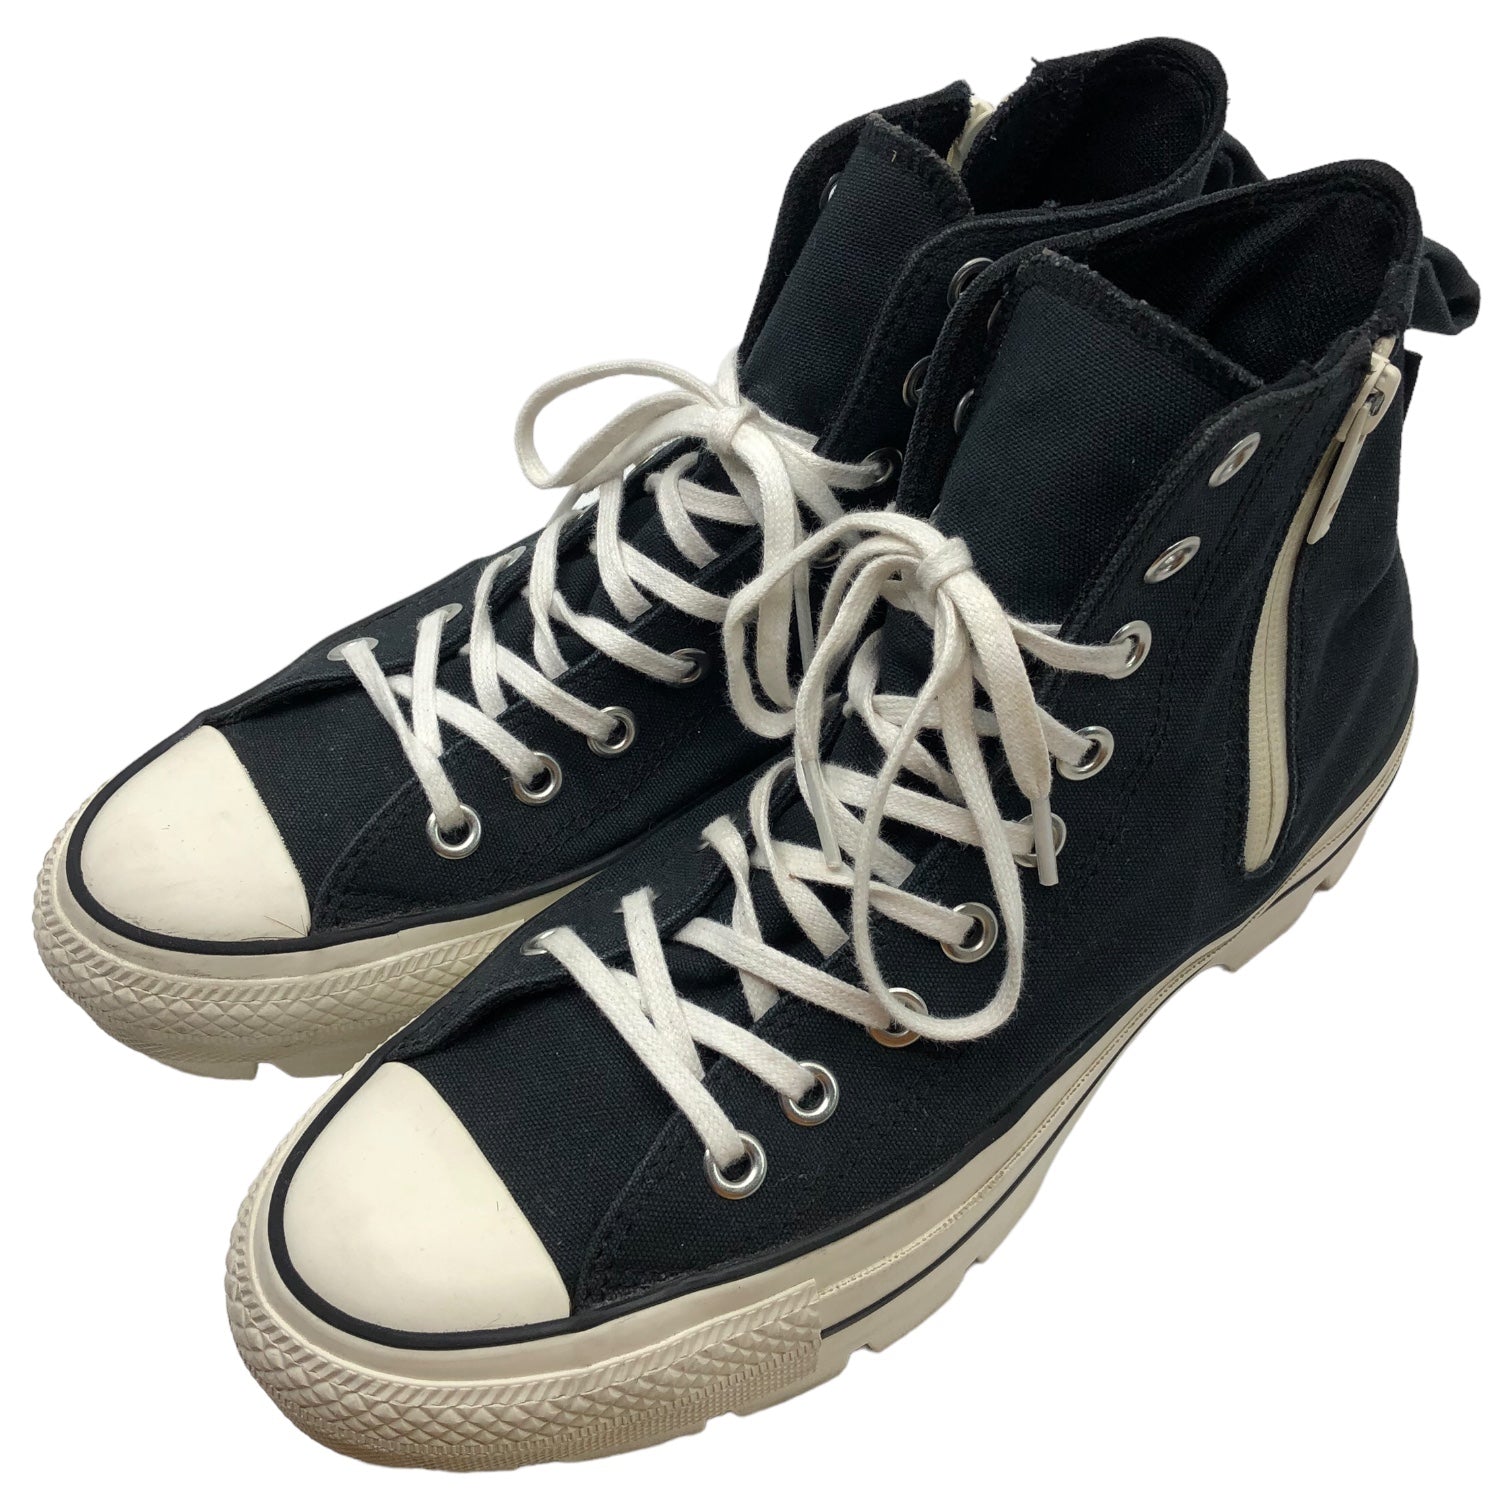 CONVERSE × beautiful people(コンバース×ビューティフルピープル) chunky heel sneakers チャンキーヒールスニーカー 31306220 26.0cm ブラック×ホワイト GORE-TEX ハイカット